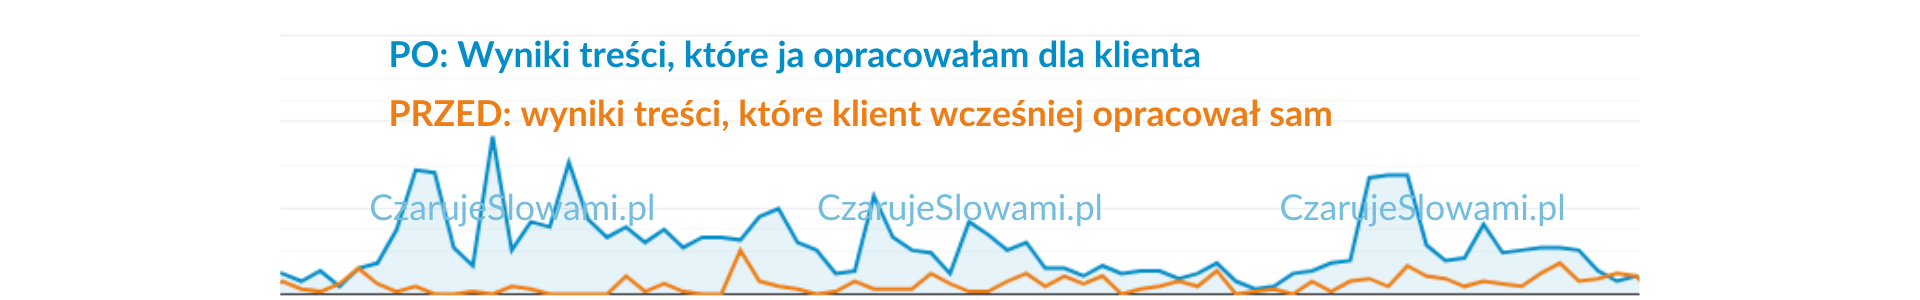 przed i po - wyniki treści klienta i wyniki treści moich CzarujeSlowami.pl copywriting sprzedażowy